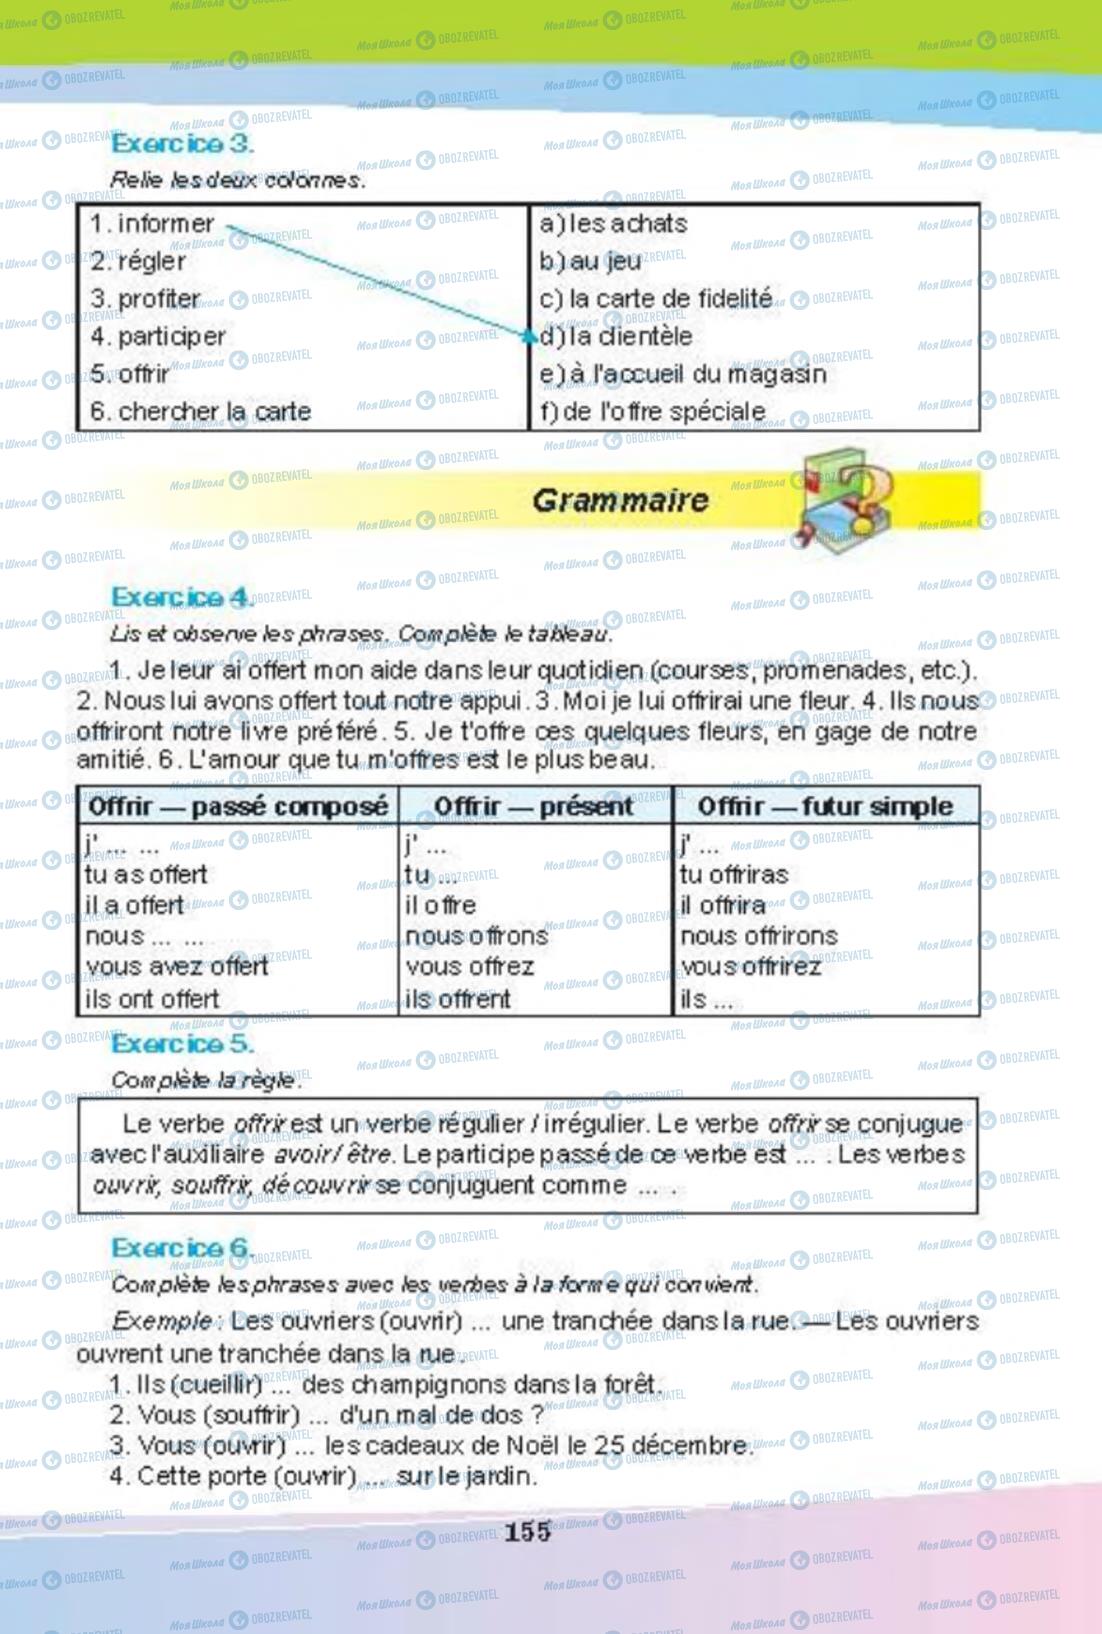 Підручники Французька мова 8 клас сторінка 154